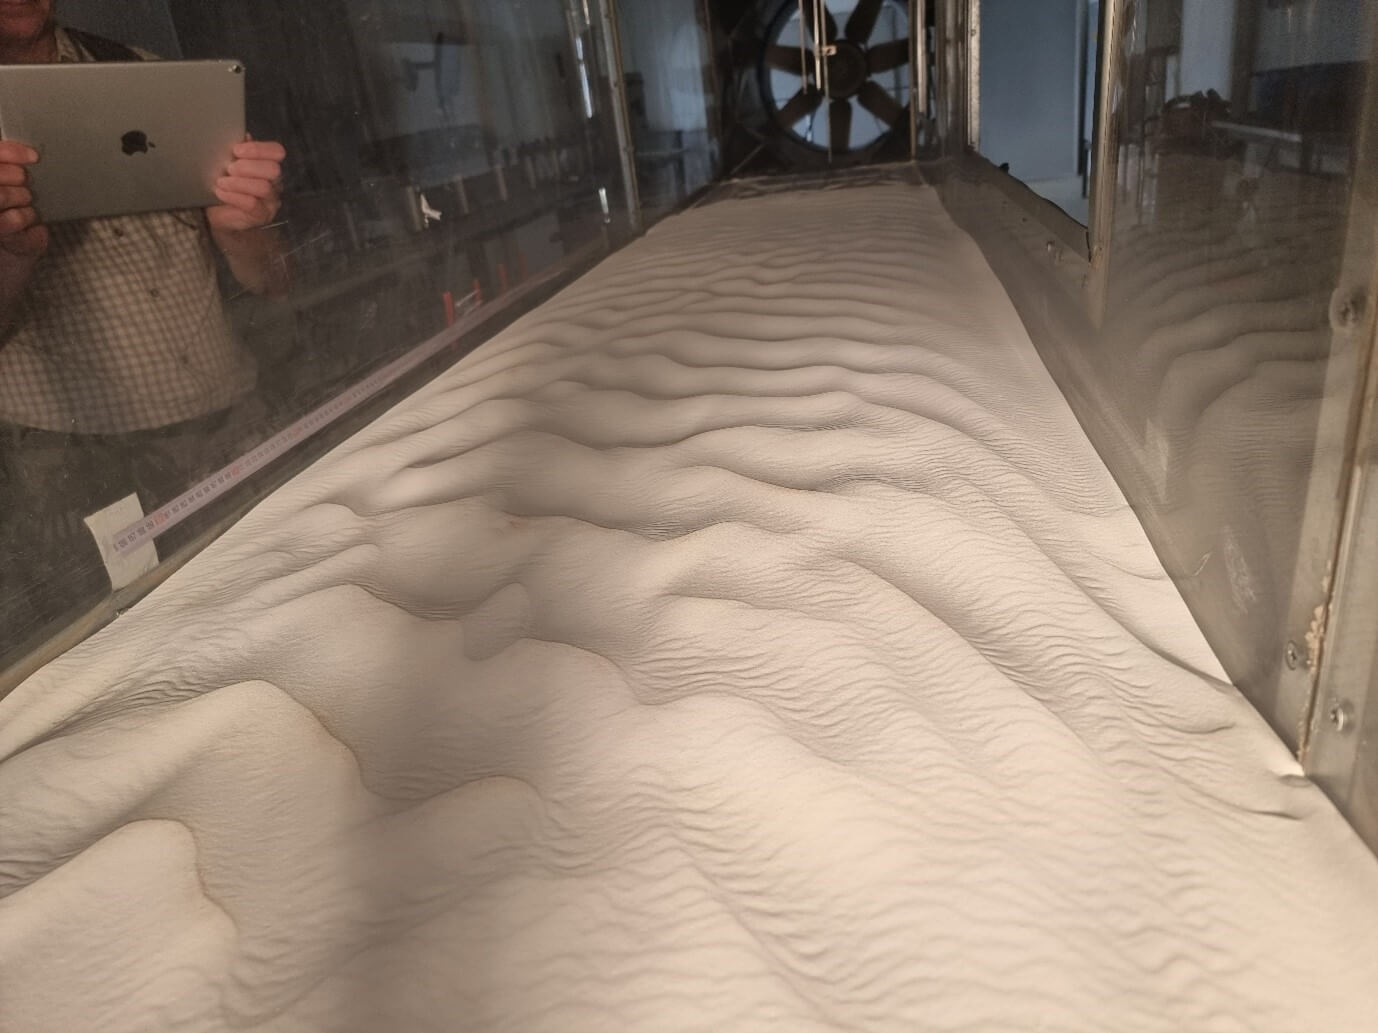 תמונה של הגלונים בתוך מנהרת הרוח במעבדה לסימולציה איאולית באוניברסיטת בן גוריון. החול מורכב מכדורי זכוכית בגודל של 90 מיקרון. קרדיט צילום: פרופ' חזי יצחק